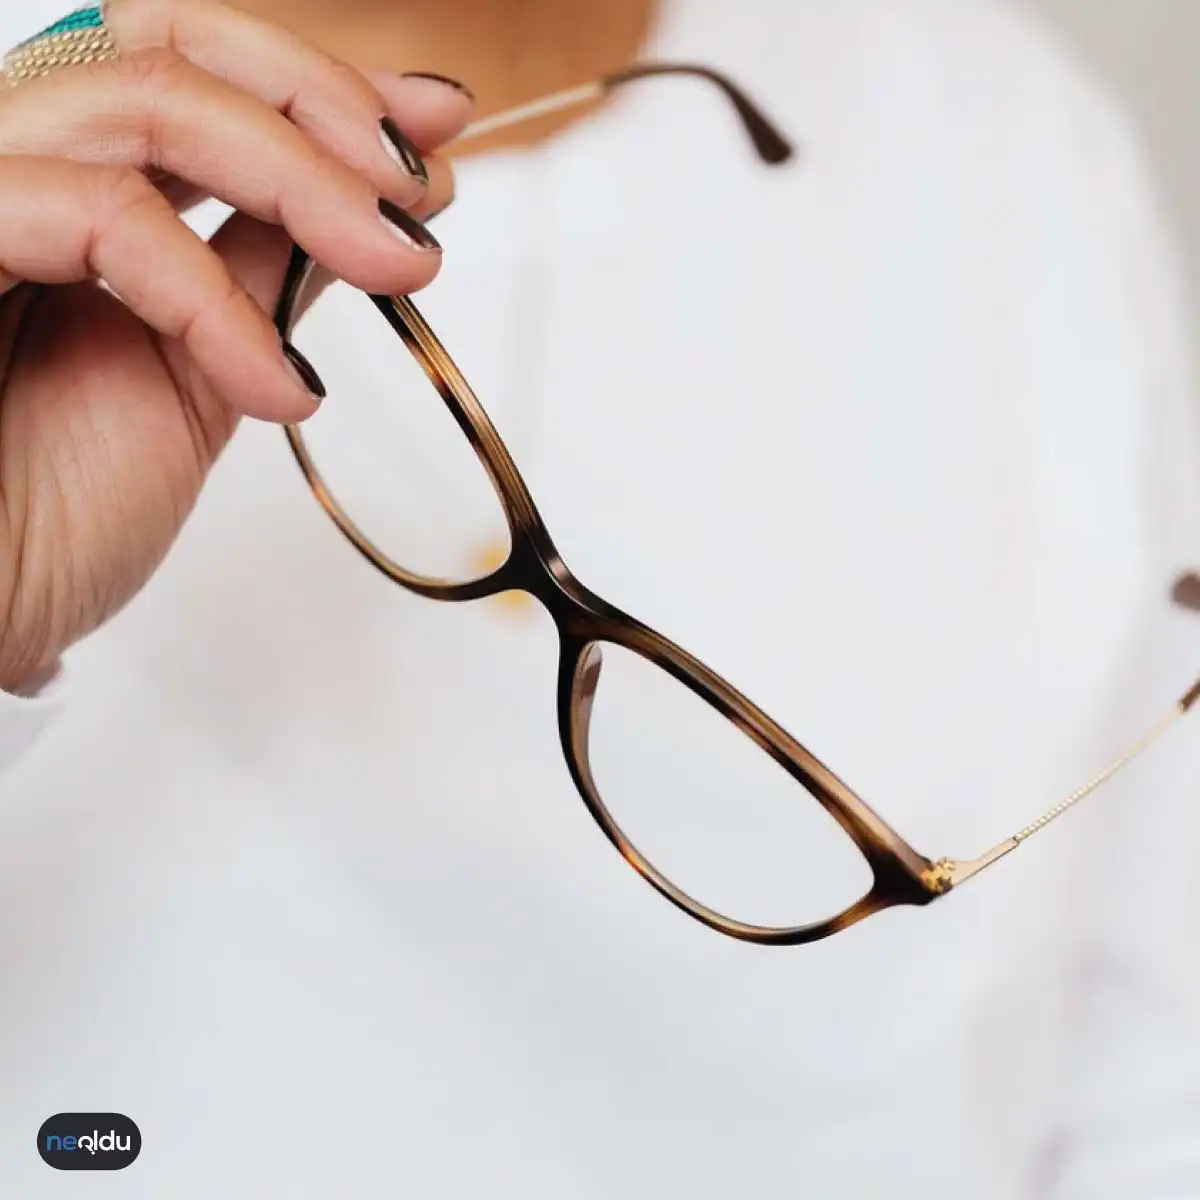 Gözlük Temizli ve Bakımı | Gözlük Camı Temizleme Yöntemleri